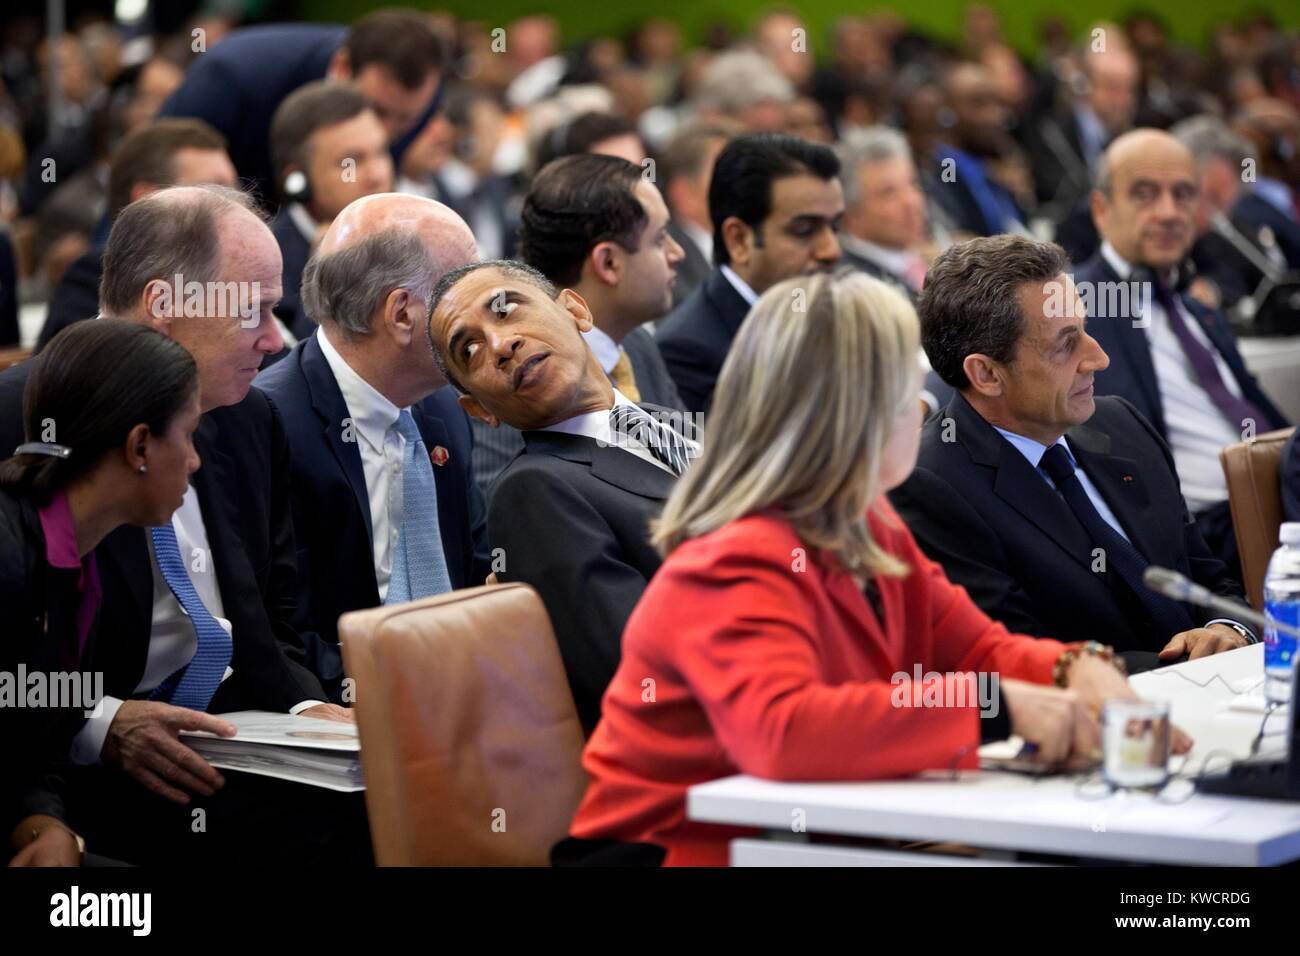 El presidente Barack Obama habla con la Asesora de Seguridad Nacional, Tom Donilon y Susan Rice. Estaban en una reunión de alto nivel sobre Libia en las Naciones Unidas, en Nueva York, el 20 de septiembre, 2011. A la derecha, Hillary Clinton, y el Presidente de Francia, Nicolas Sarkozy. (BSLOC 2015 3 188) Foto de stock